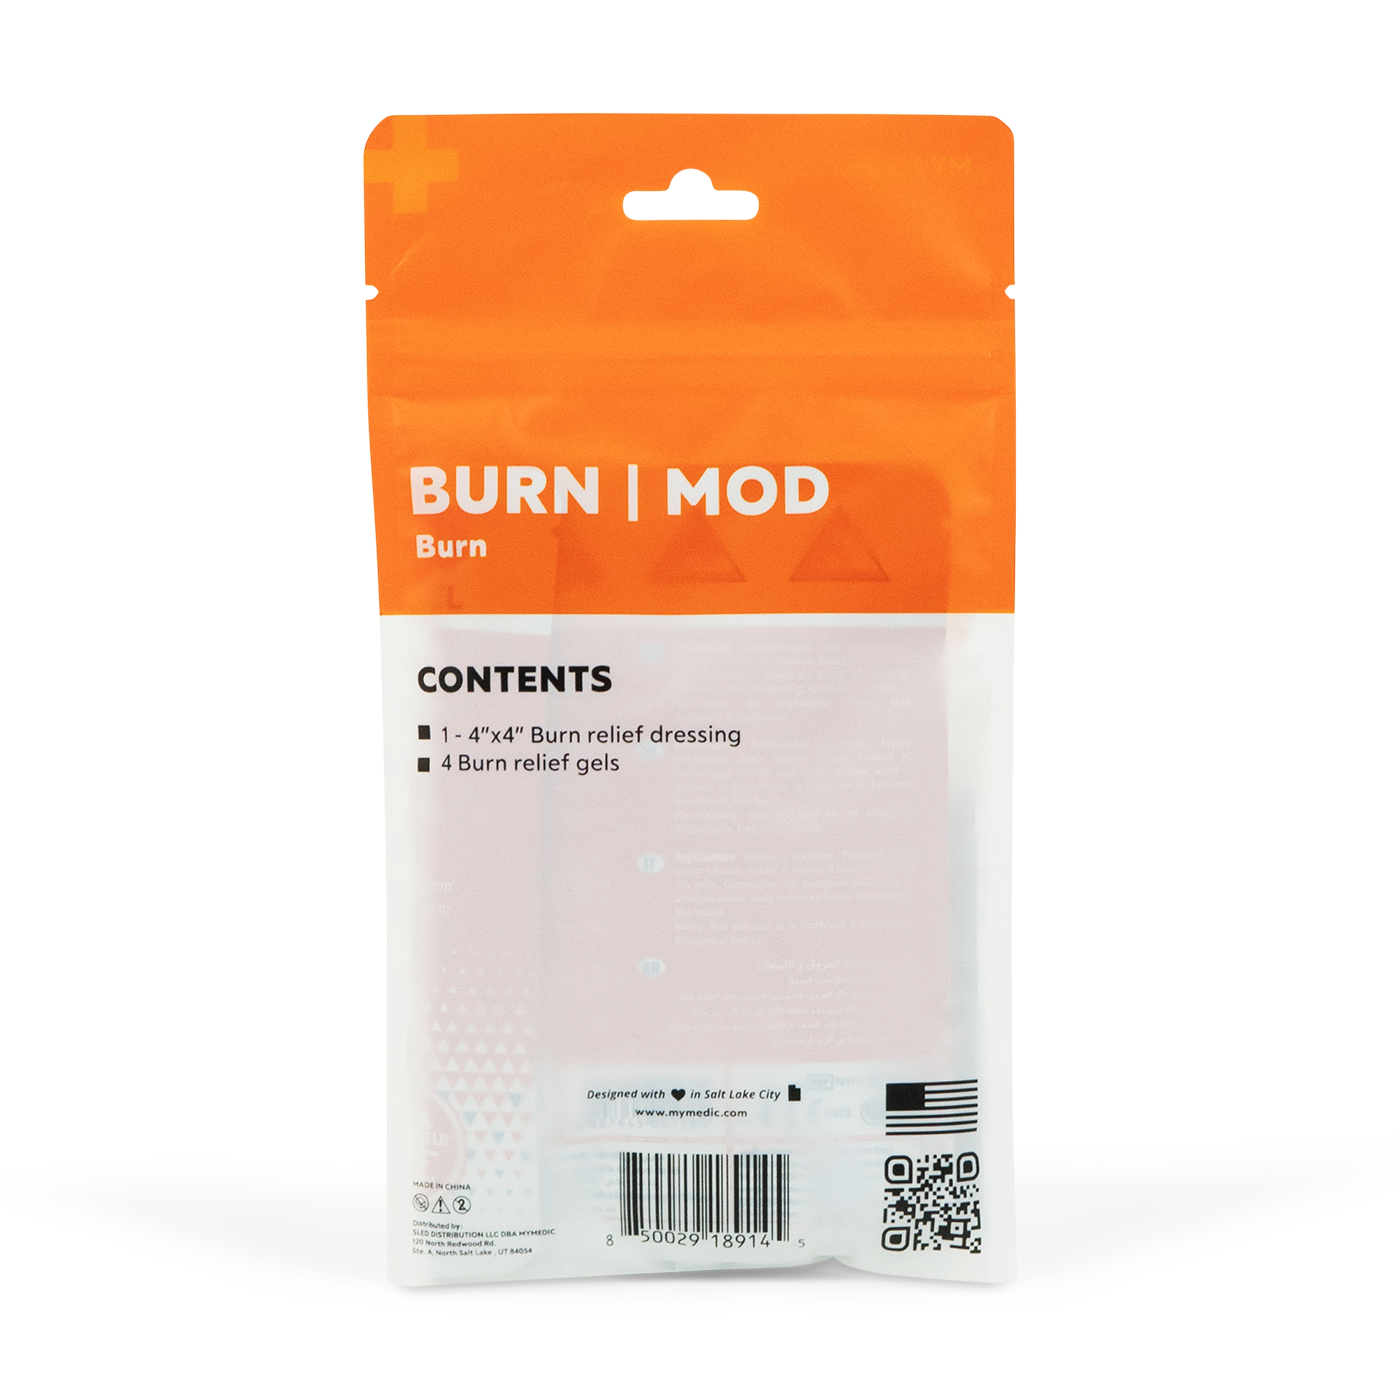 Burn MOD